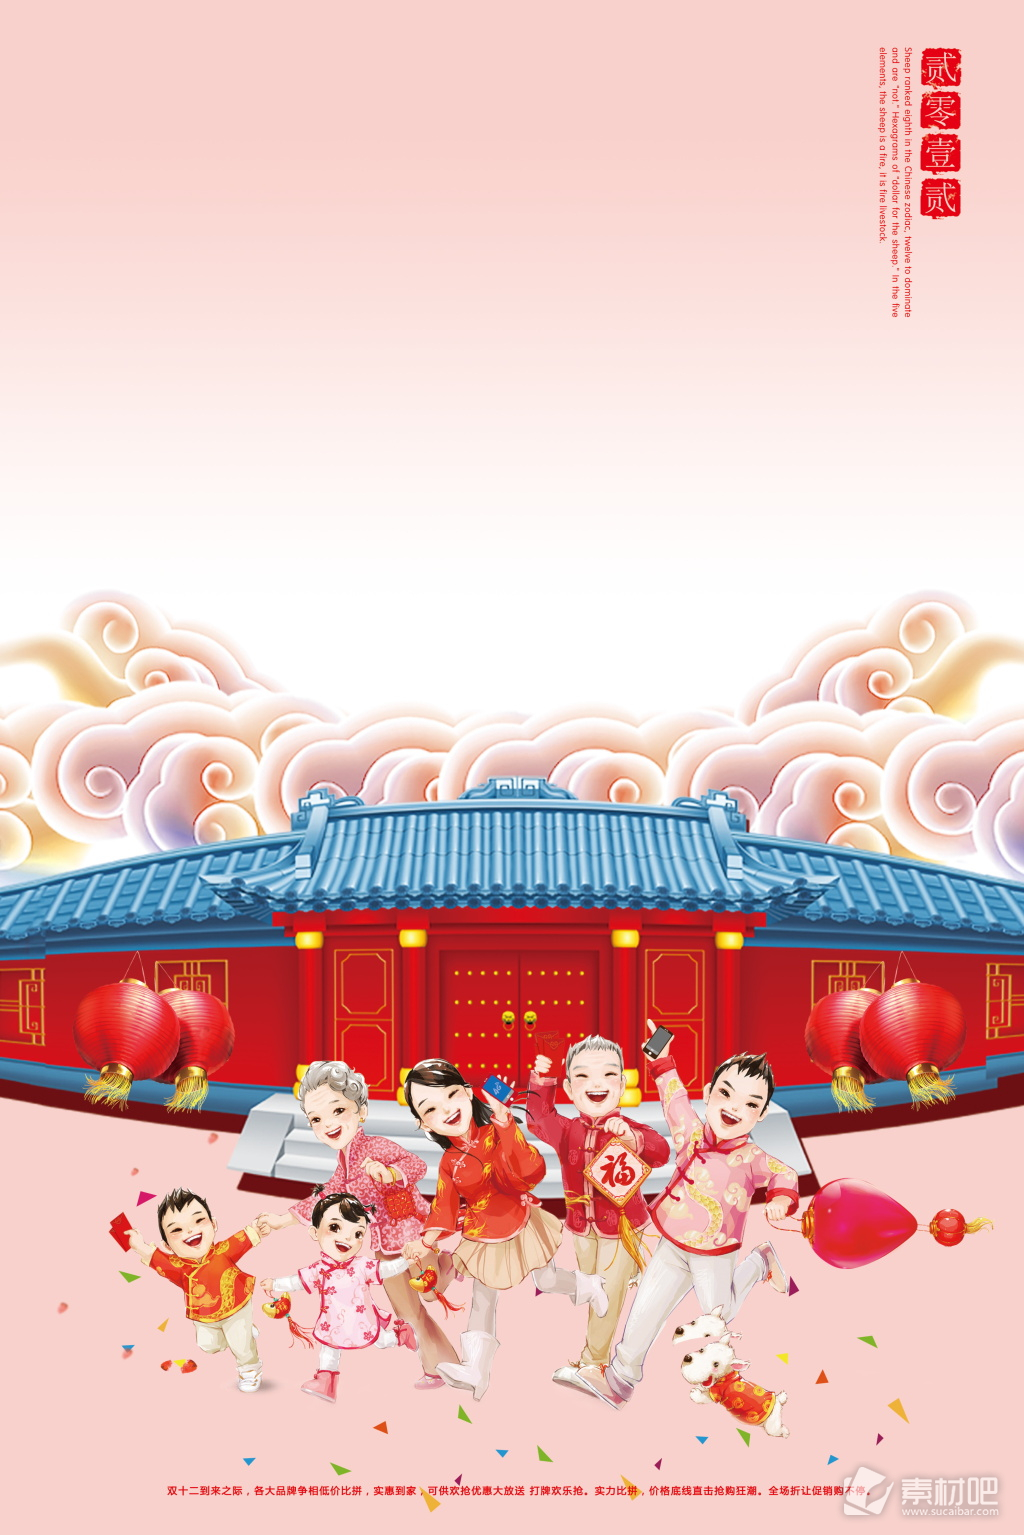 2018年狗年春节海报背景设计